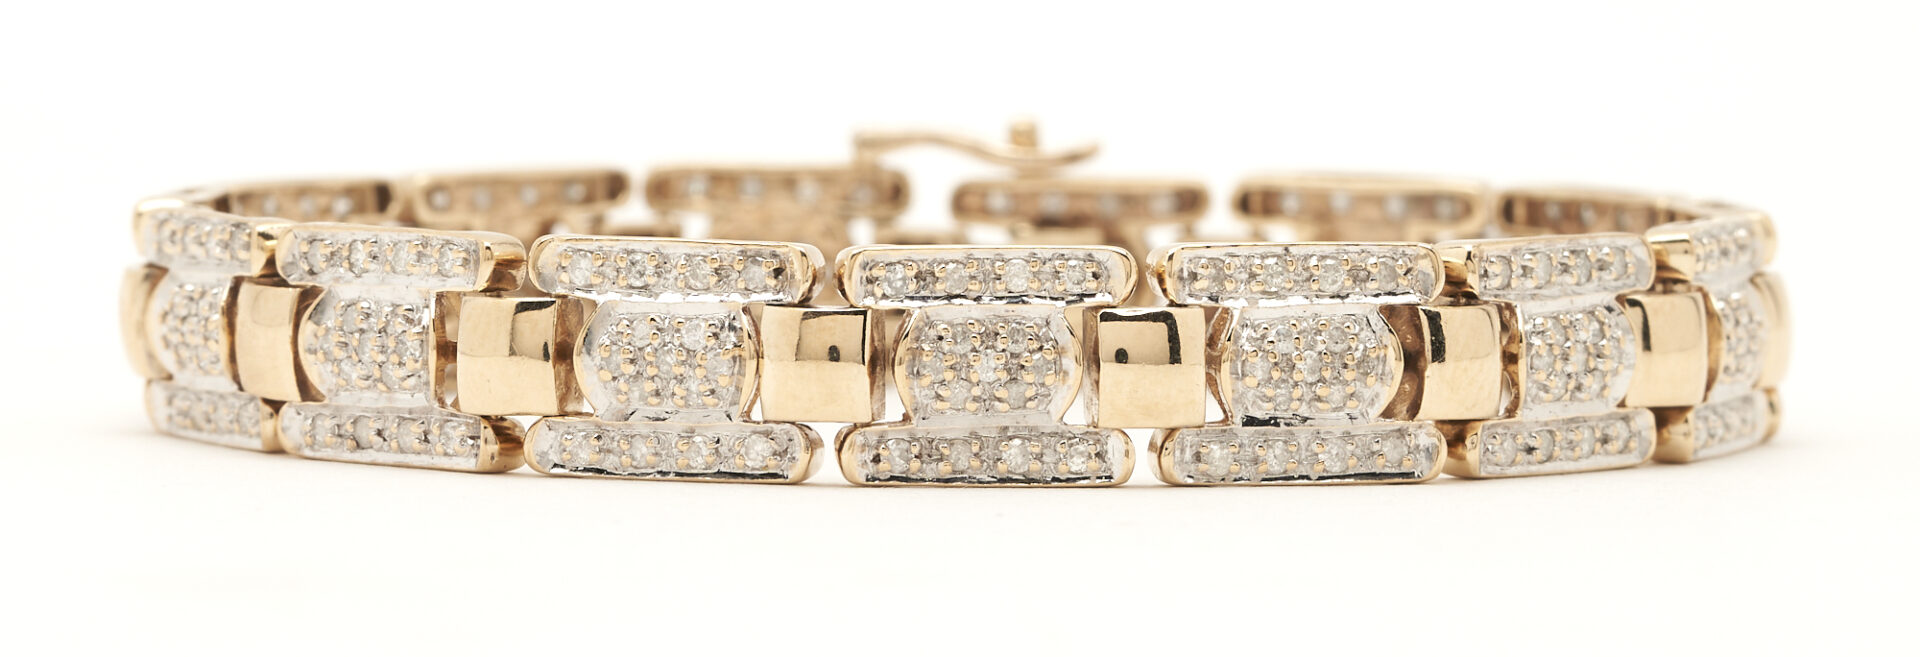 Lot 424: 10K Gold & Diamond Link Bracelet